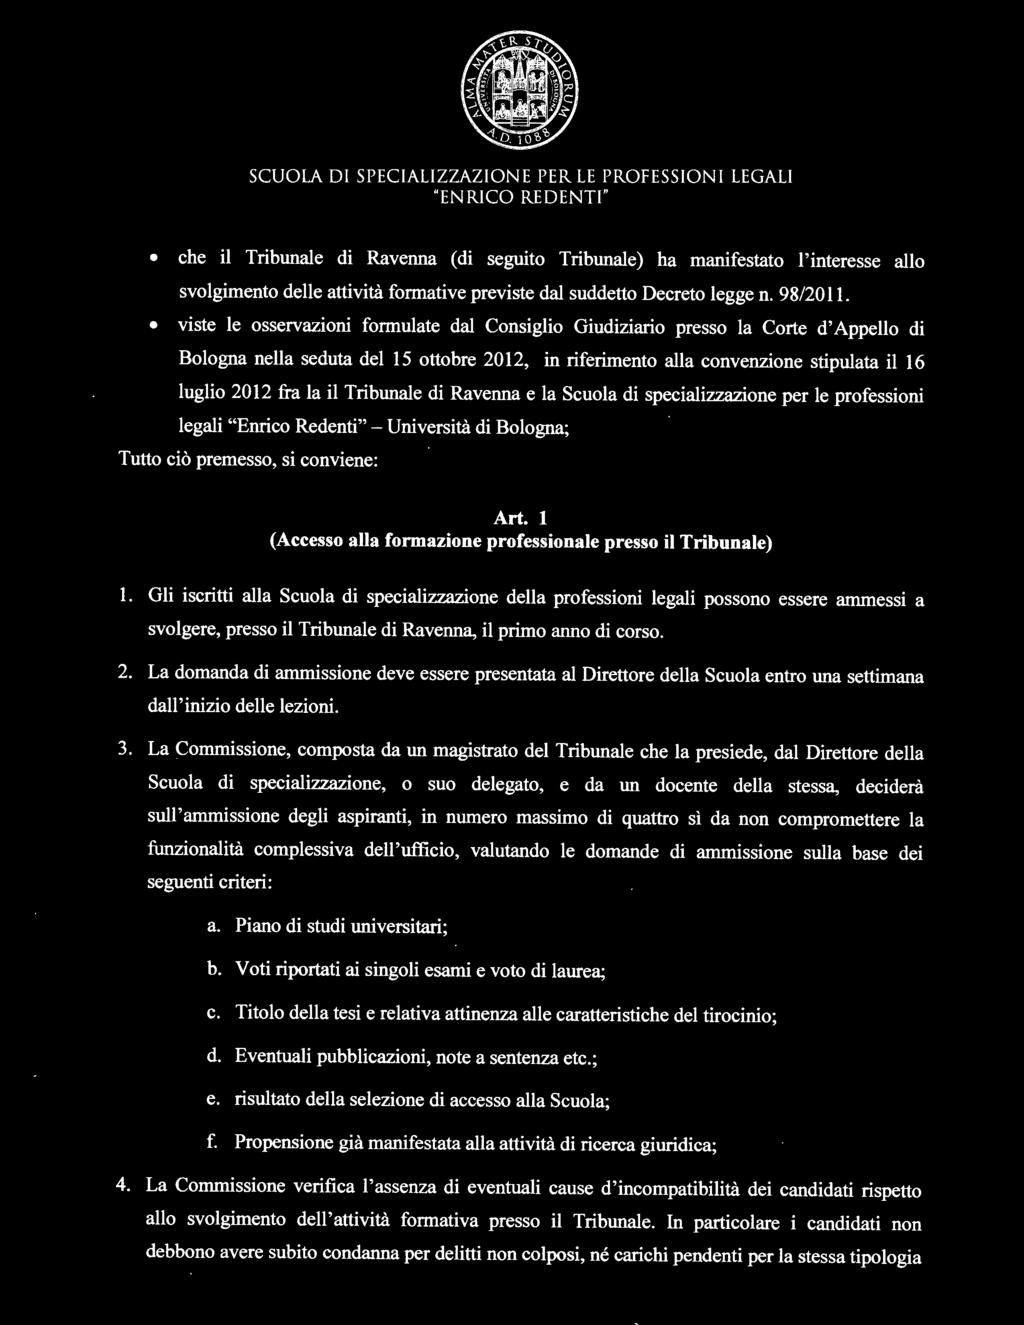 Gli iscritti alla Scuola di specializzazione della professioni legali possono essere ammessi a svolgere, presso il Tribunale di Ravenna, il primo anno di corso. 2.